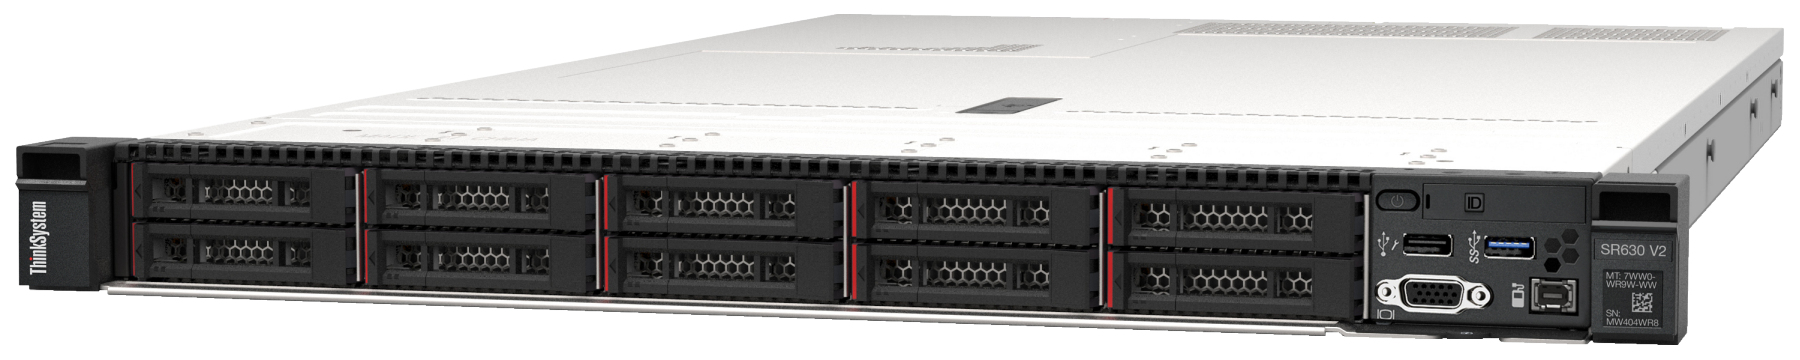 Сервер Lenovo ThinkSystem SR630 V2 (7Z71A053EA). Фиксированная комплектация сервера